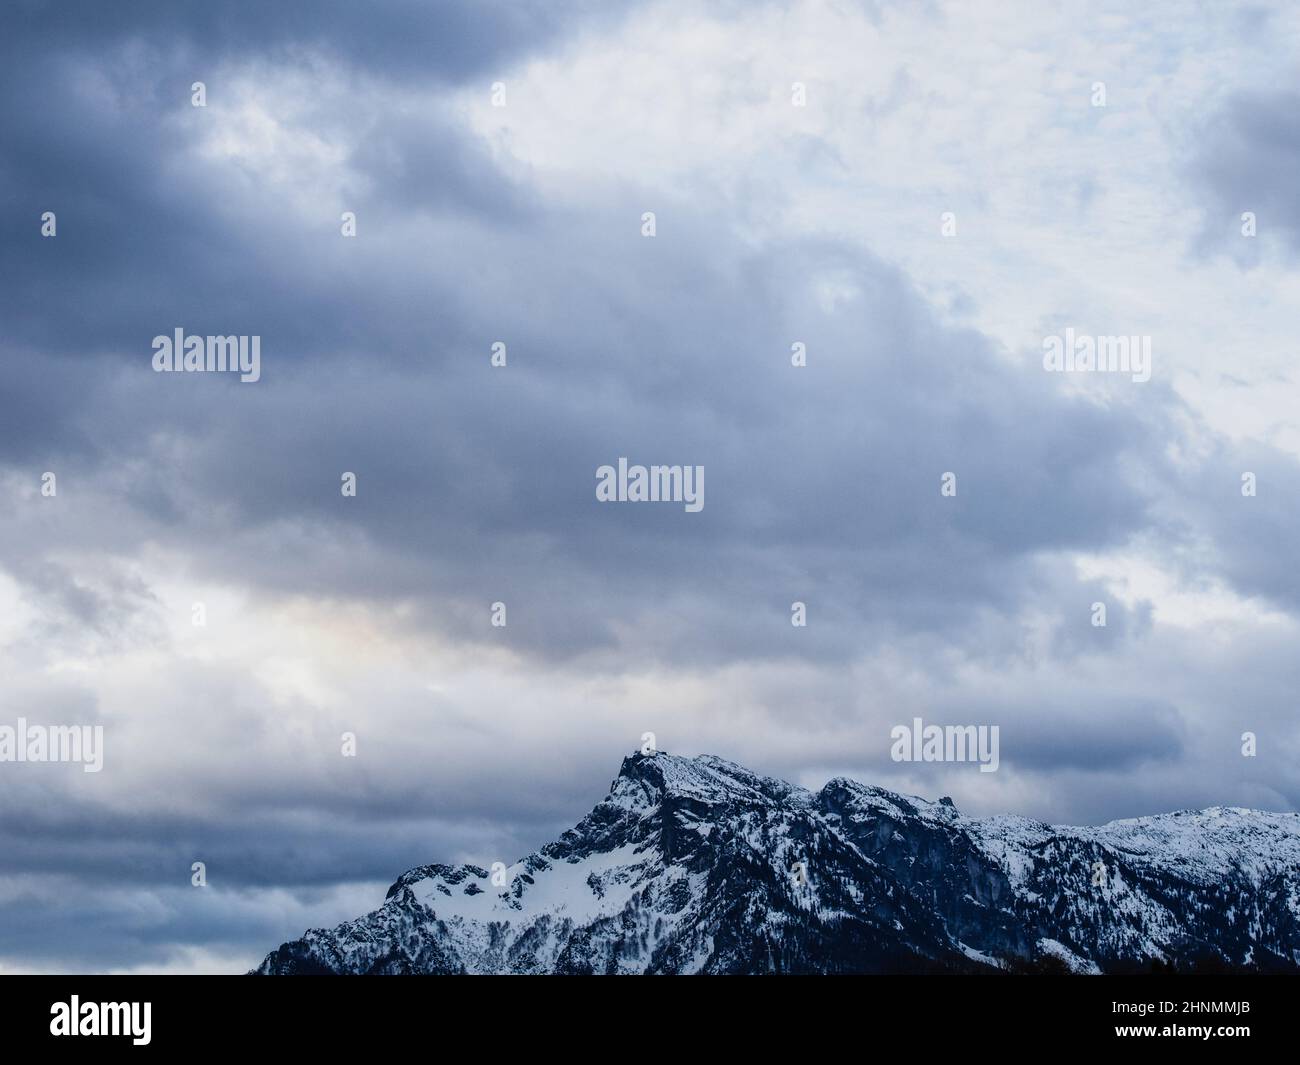 Snowy Mountain and dramatic sky / Schneebedeckter Berg und dramatischer Himmel Stock Photo